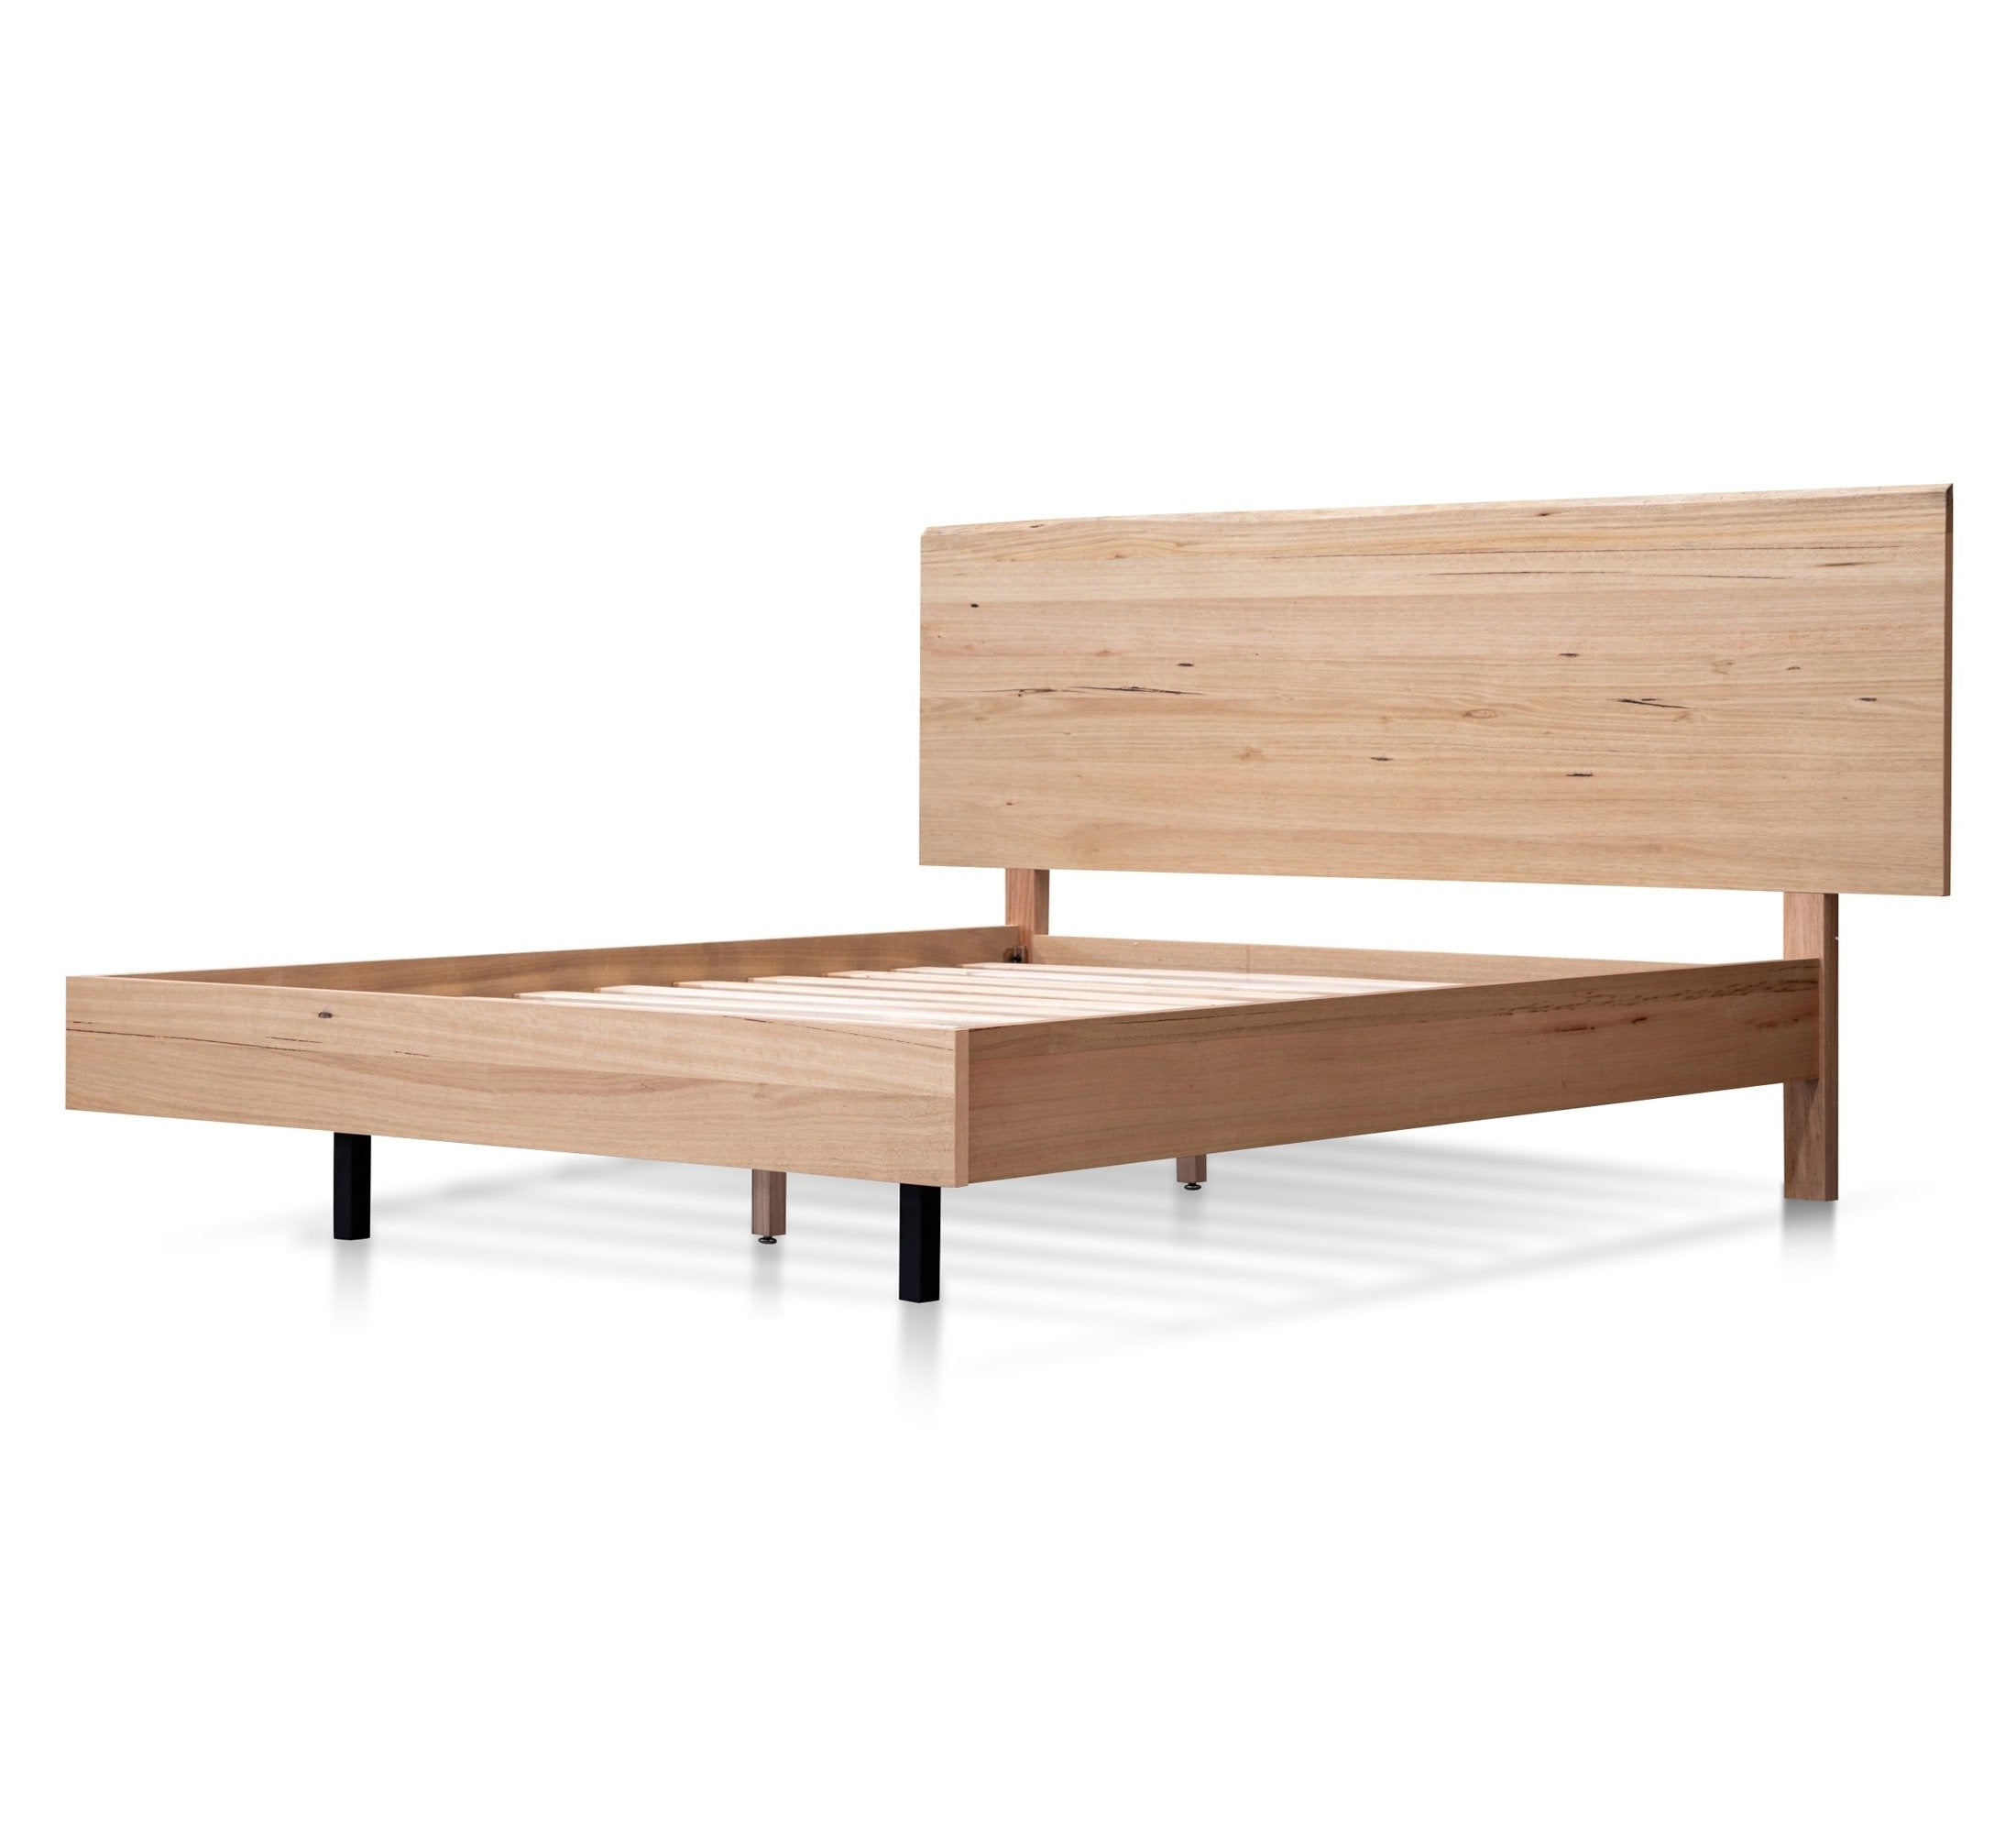 Wooden King Size Bed Frame – Messmate